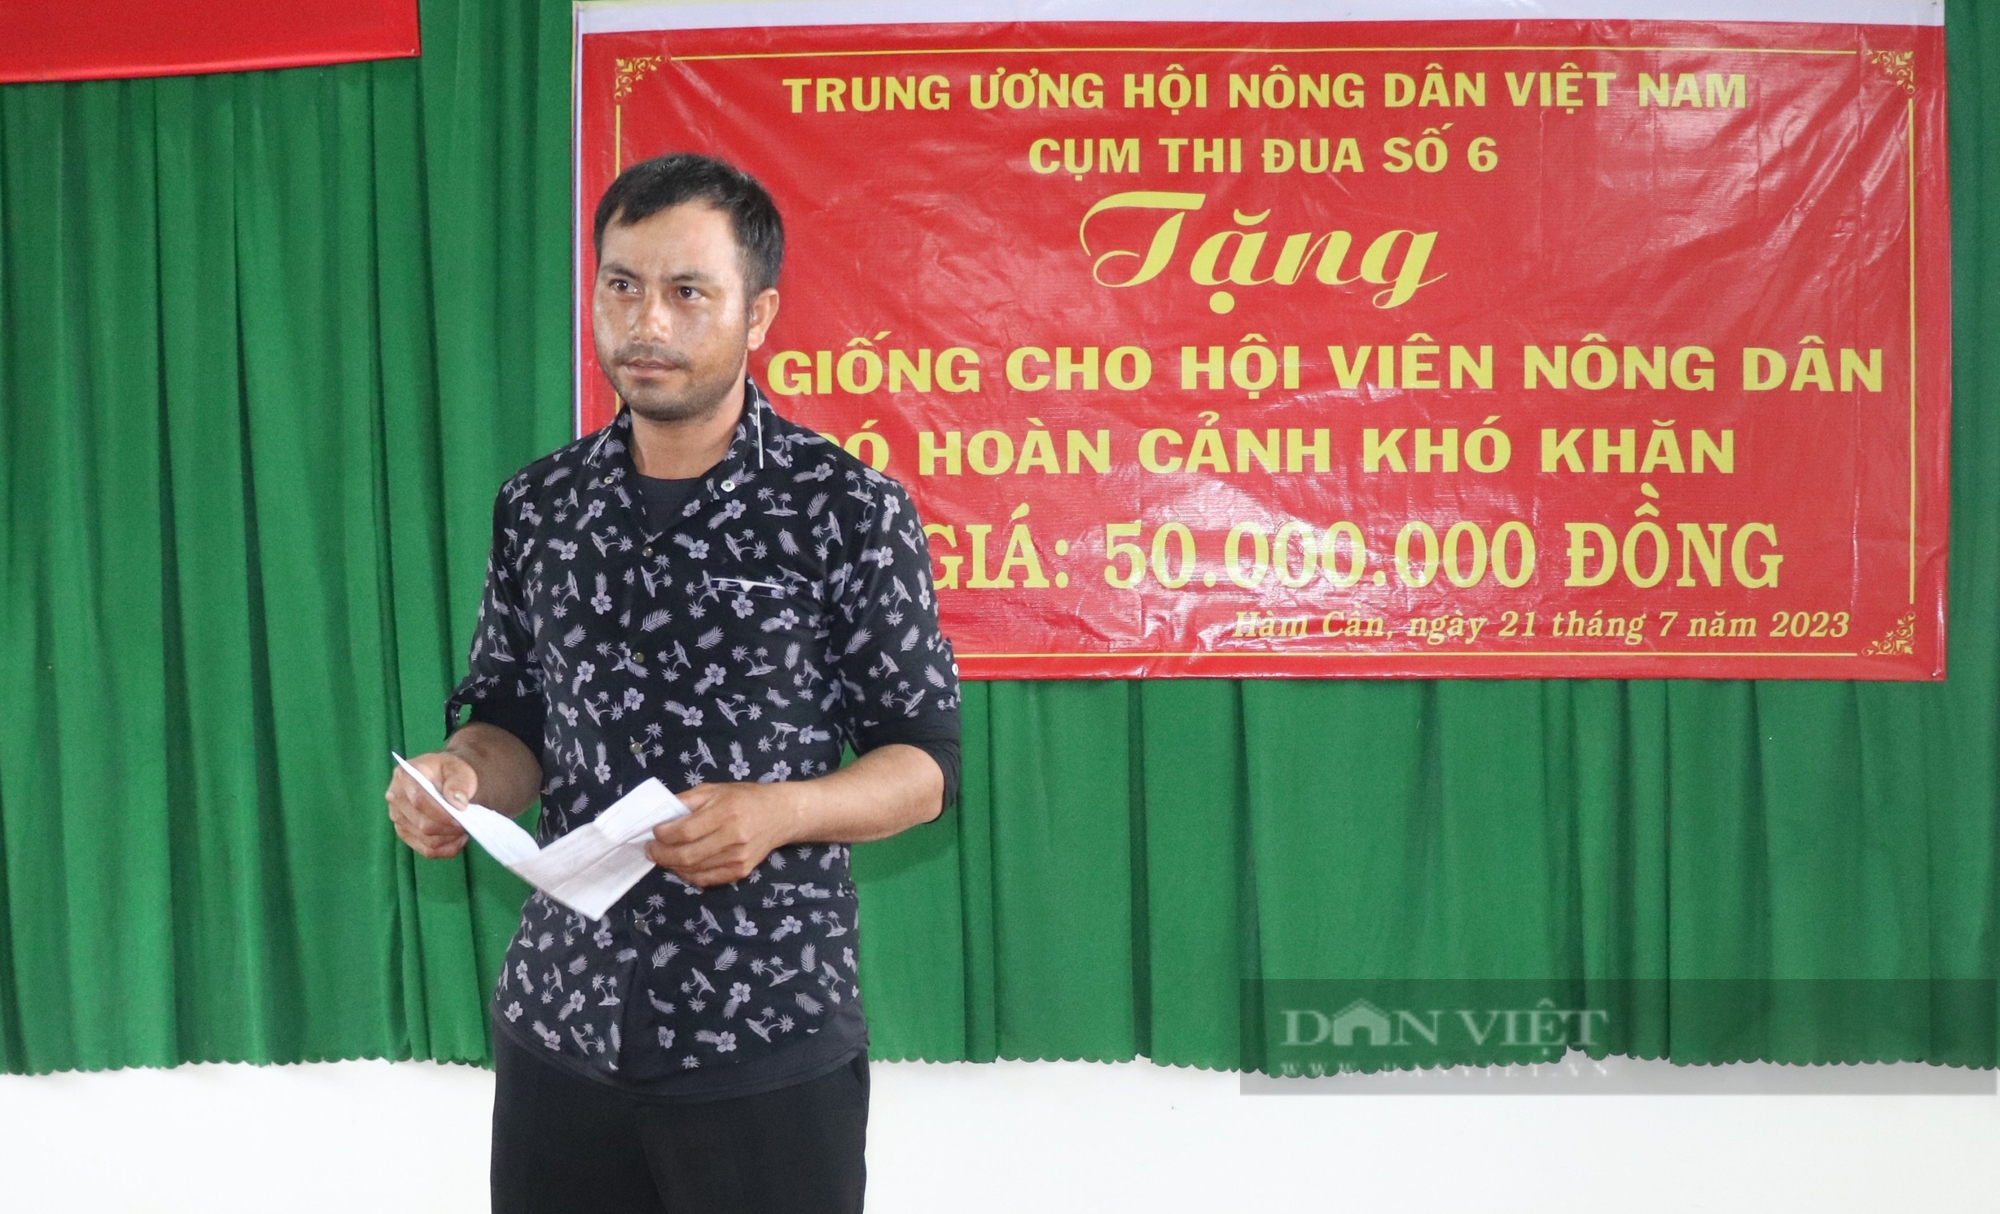 Trung ương Hội Nông dân Việt Nam tặng bò sinh sản cho nông dân nghèo ở Bình Thuận - Ảnh 3.